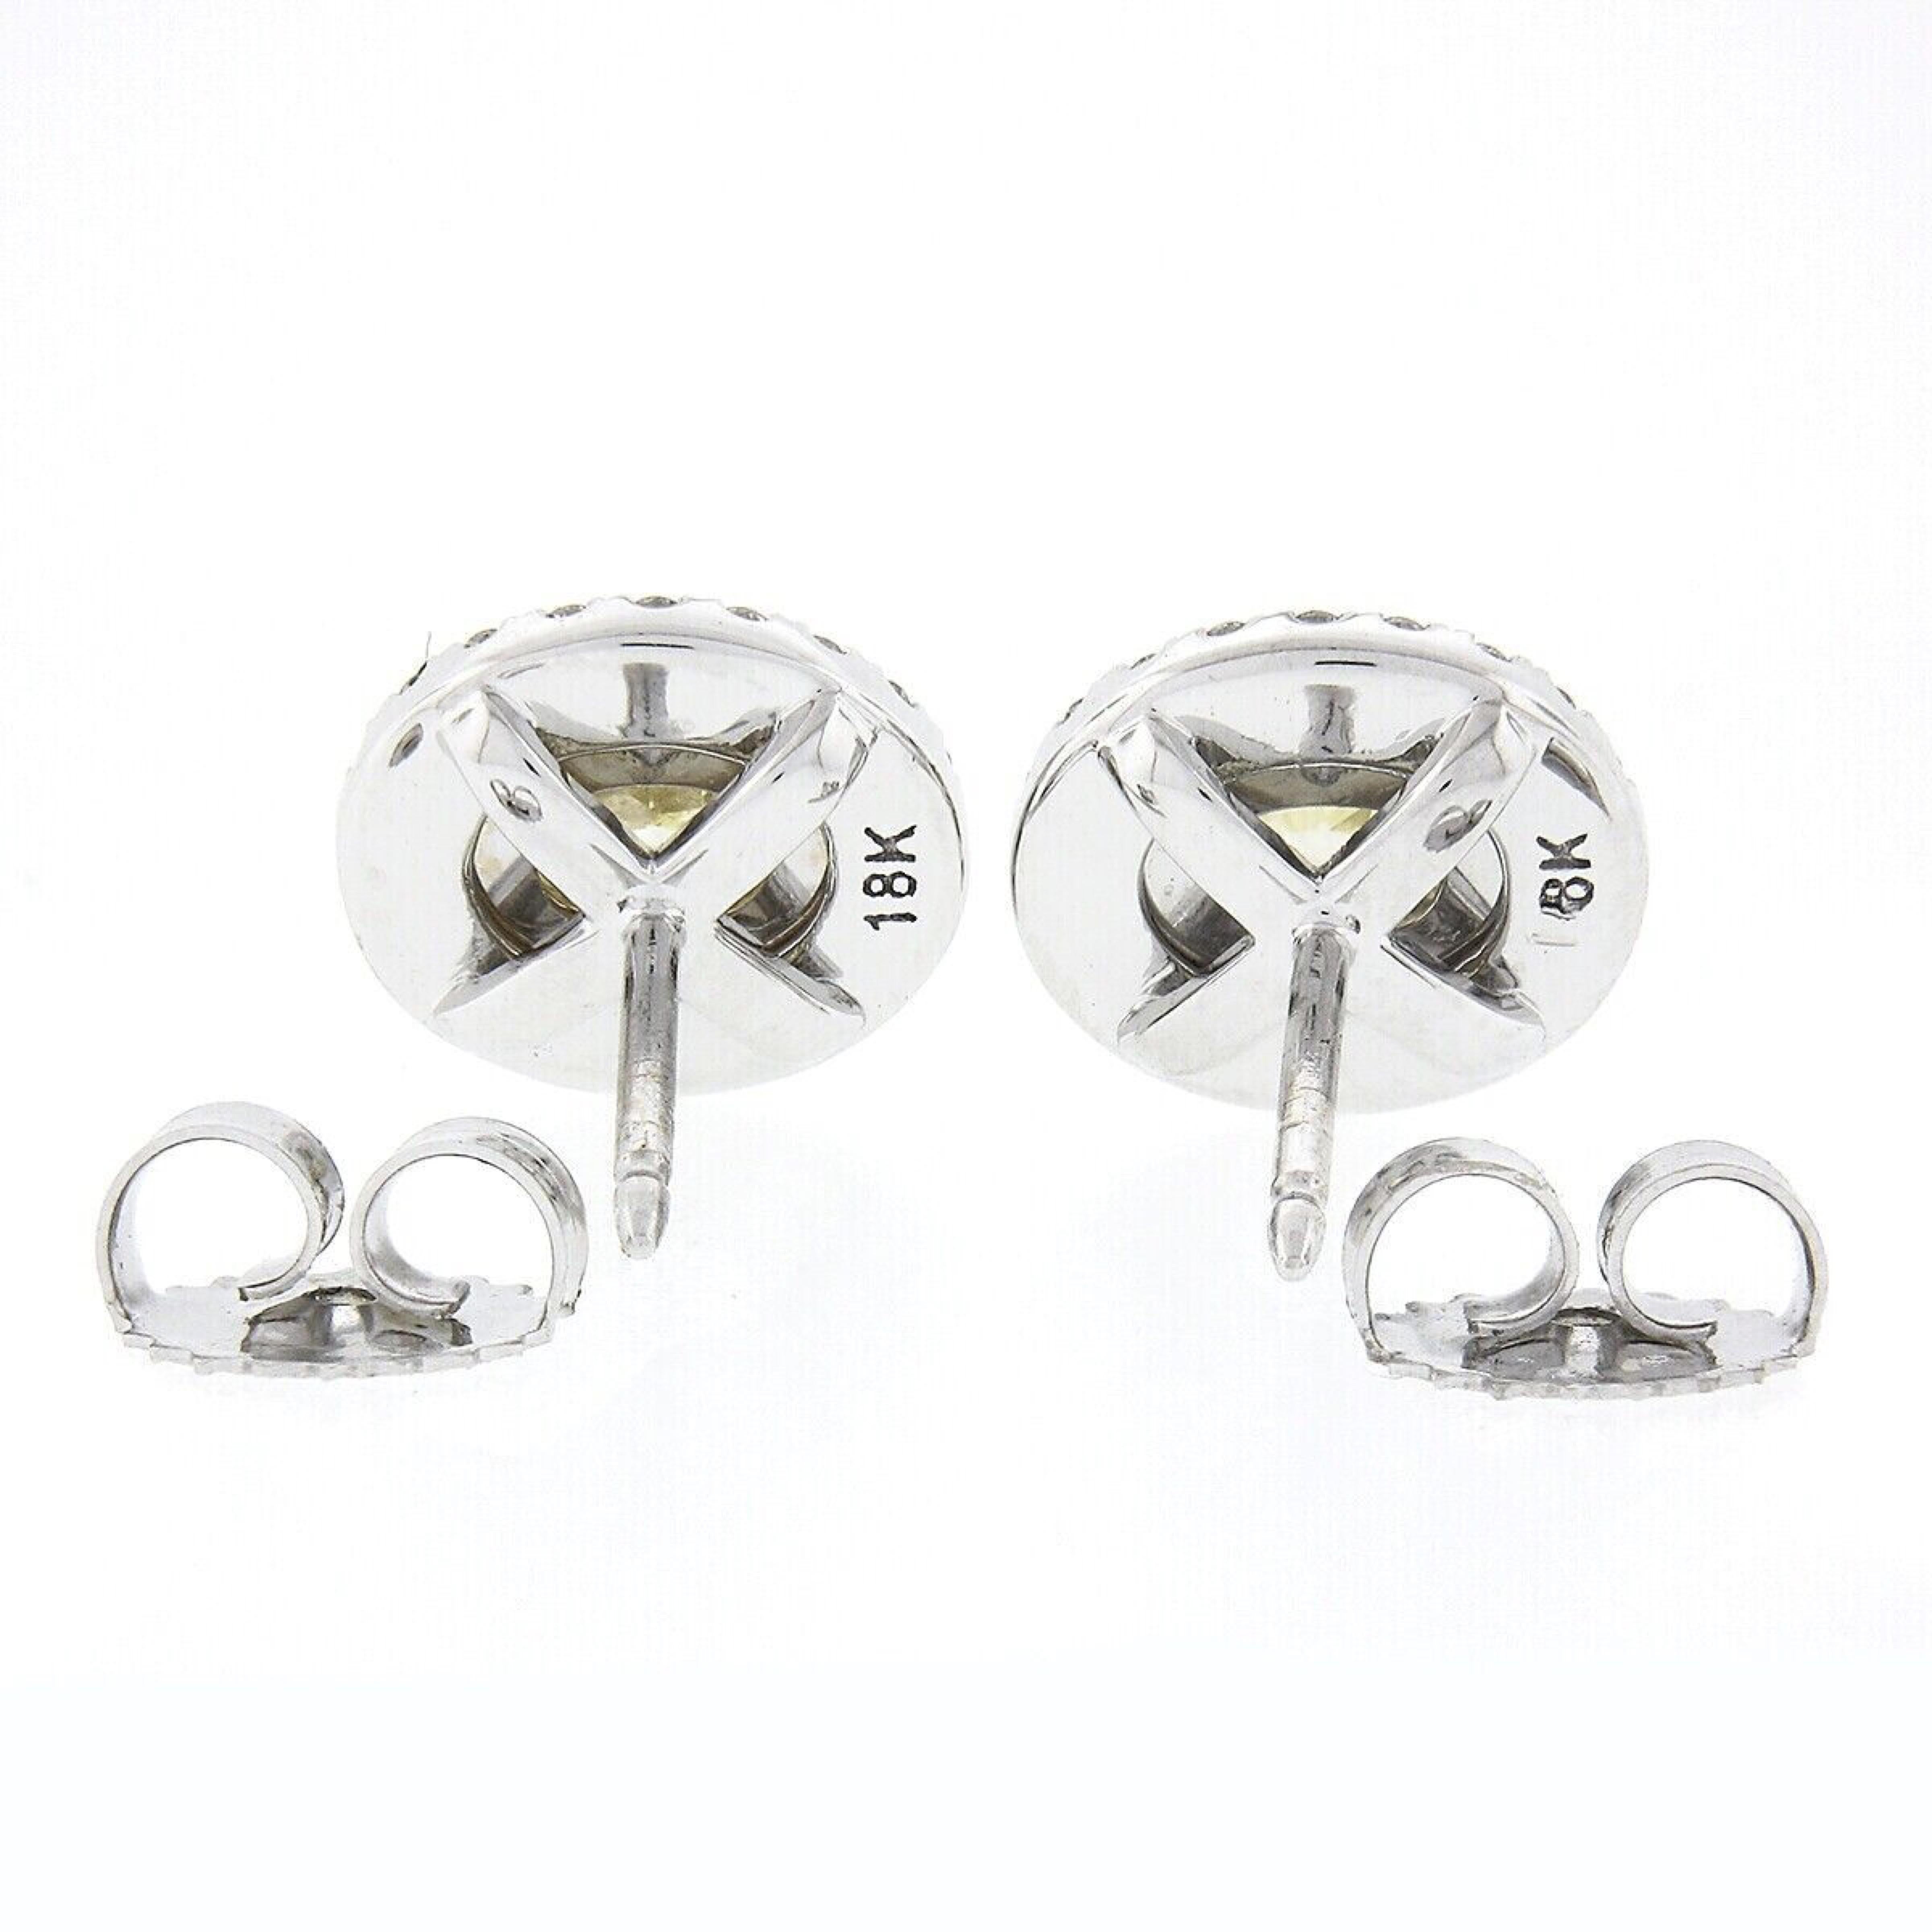 Oval Cut New 18K TT Gold 1.0ctw Fancy Yellow & White Diamond Dual Halo Oval Stud Earrings For Sale